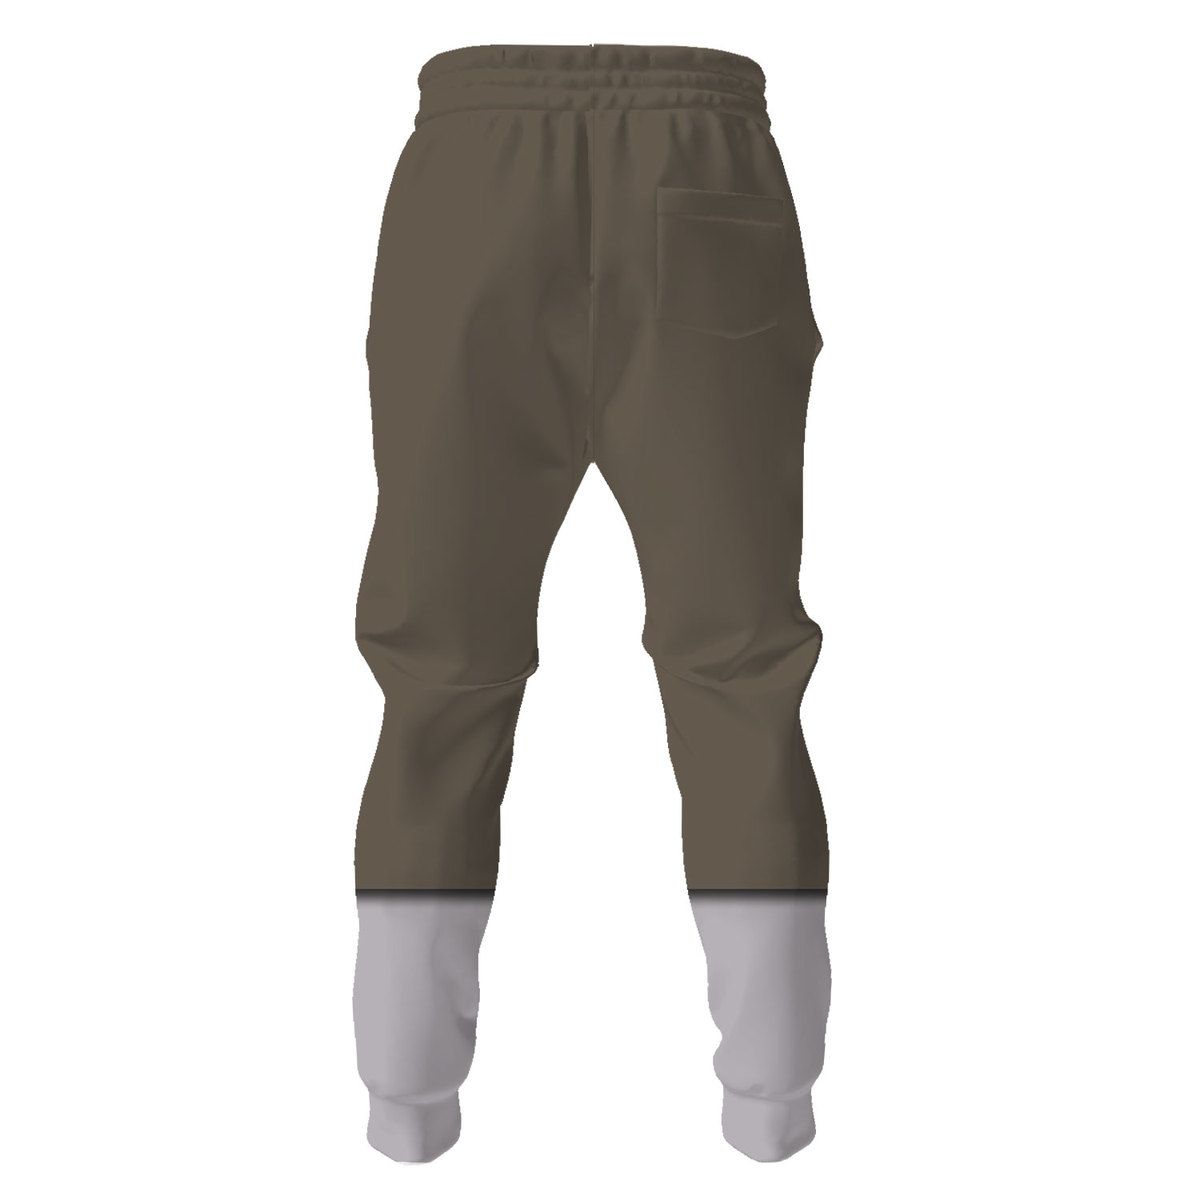 Scout TF2 pants